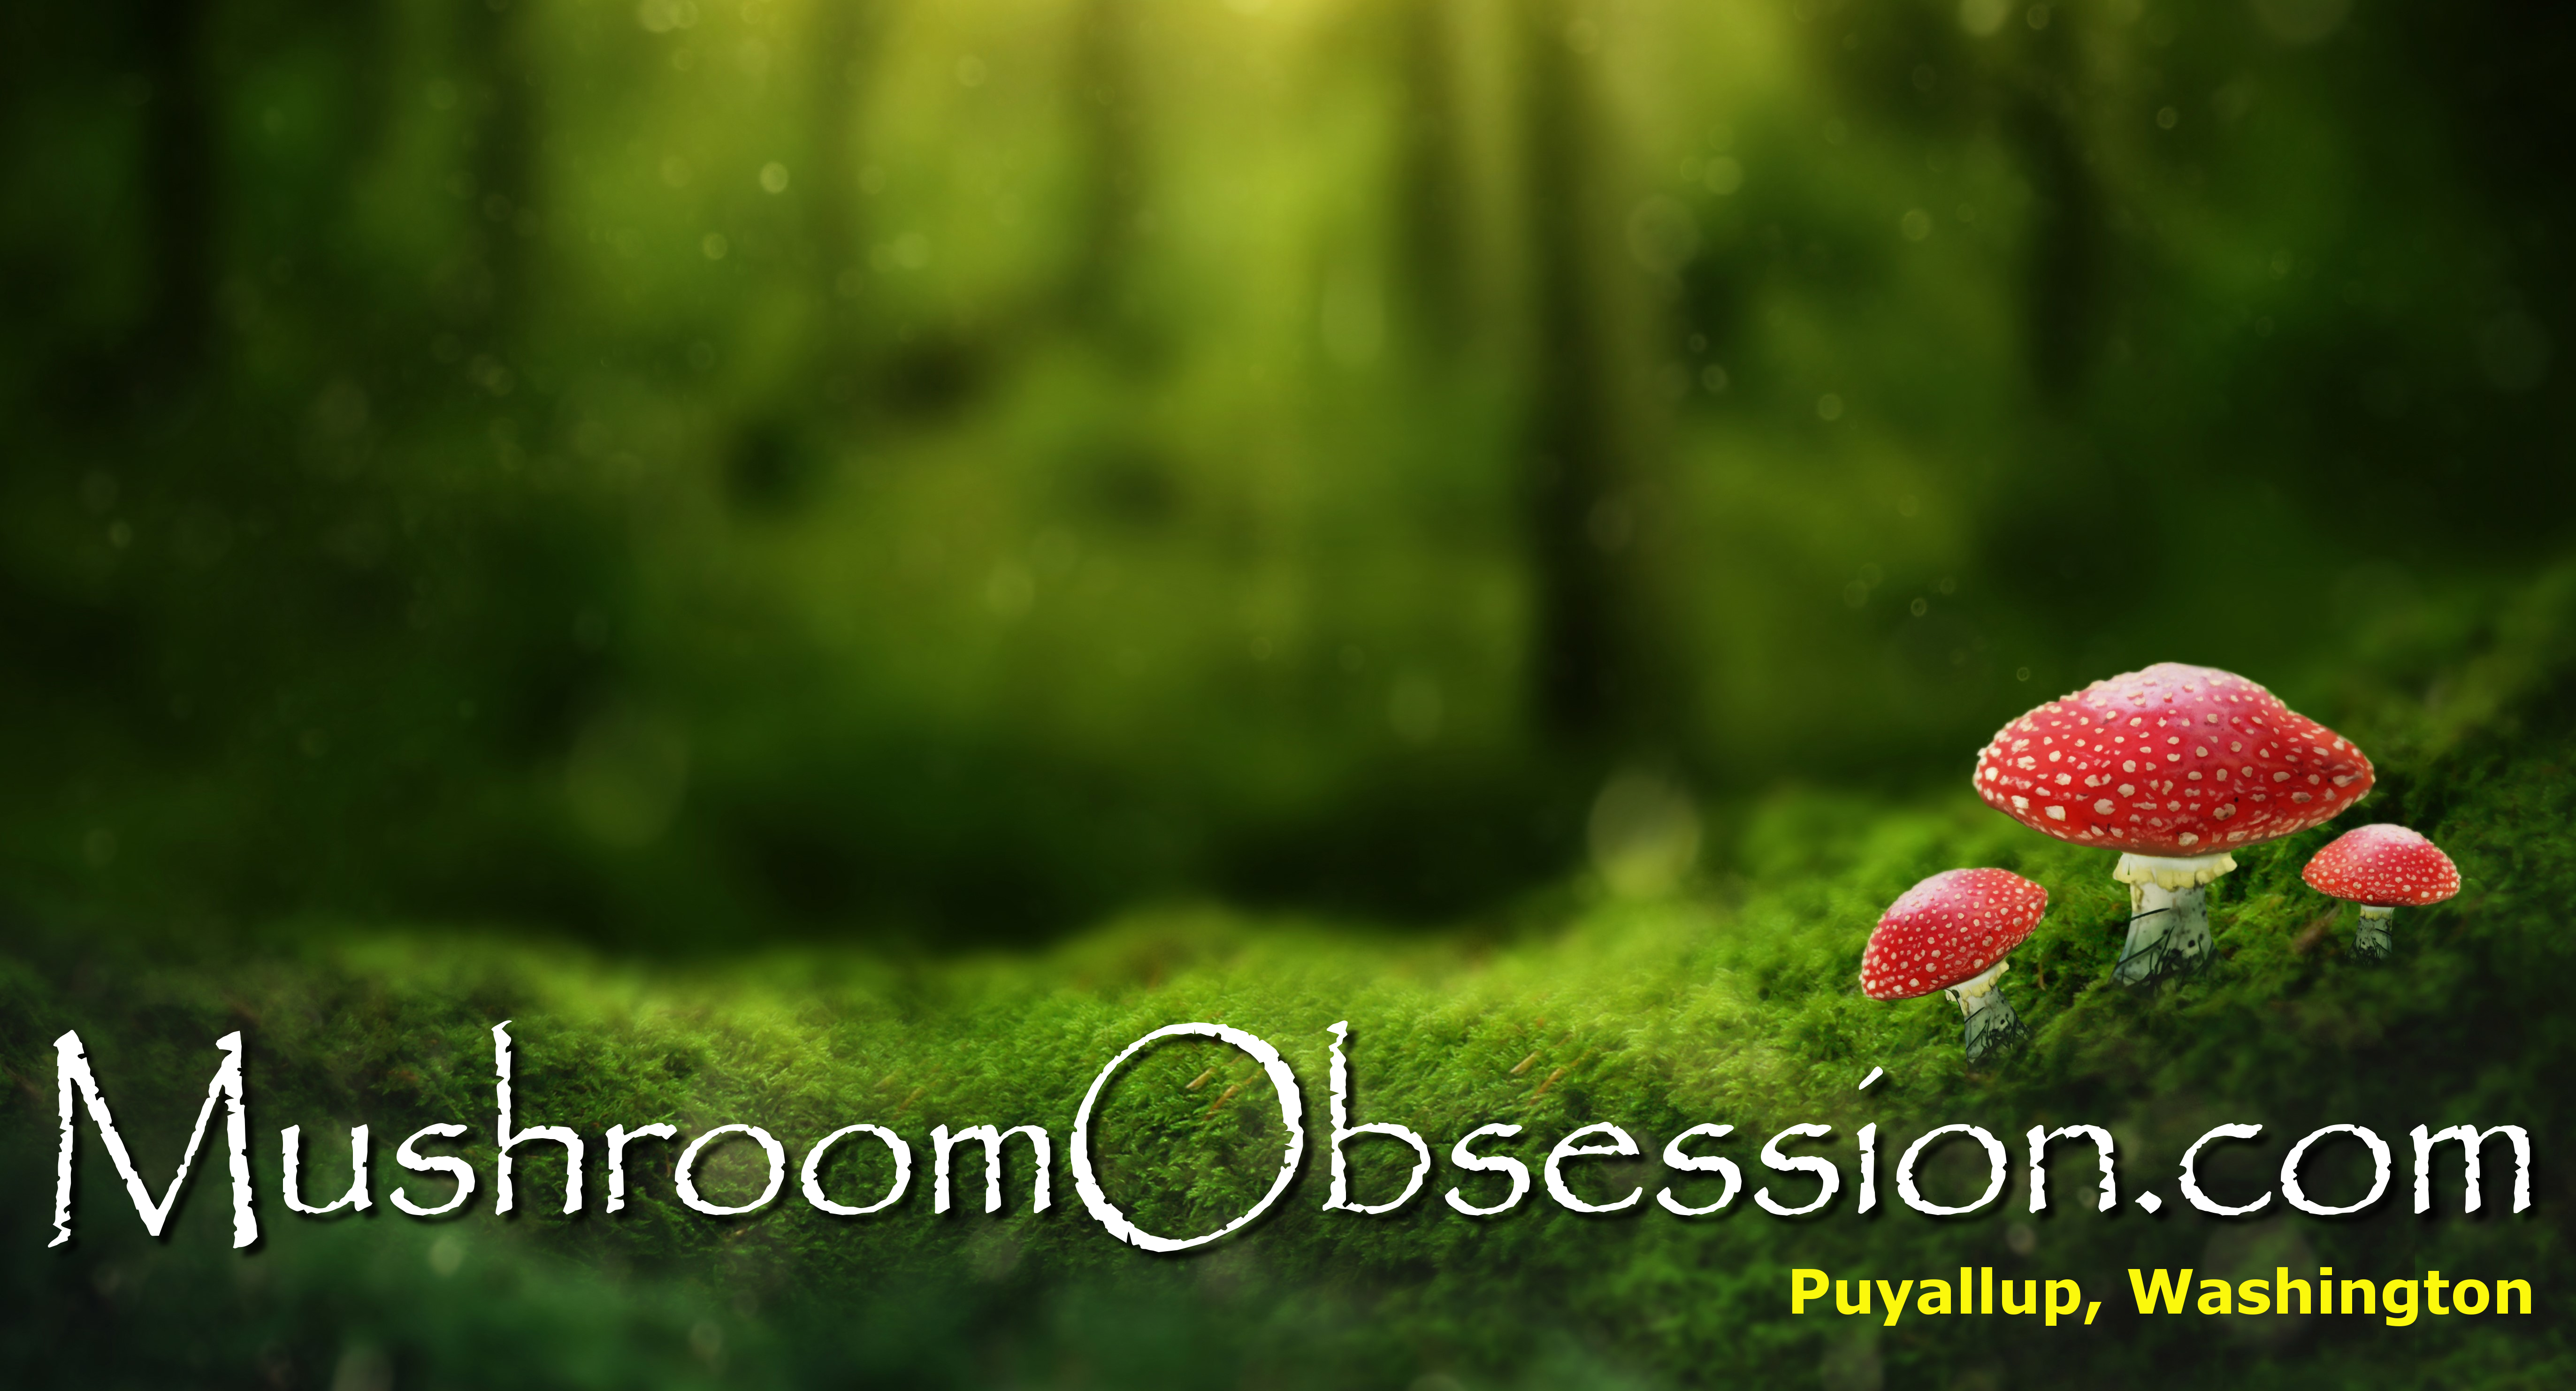 Mushroom Obsession